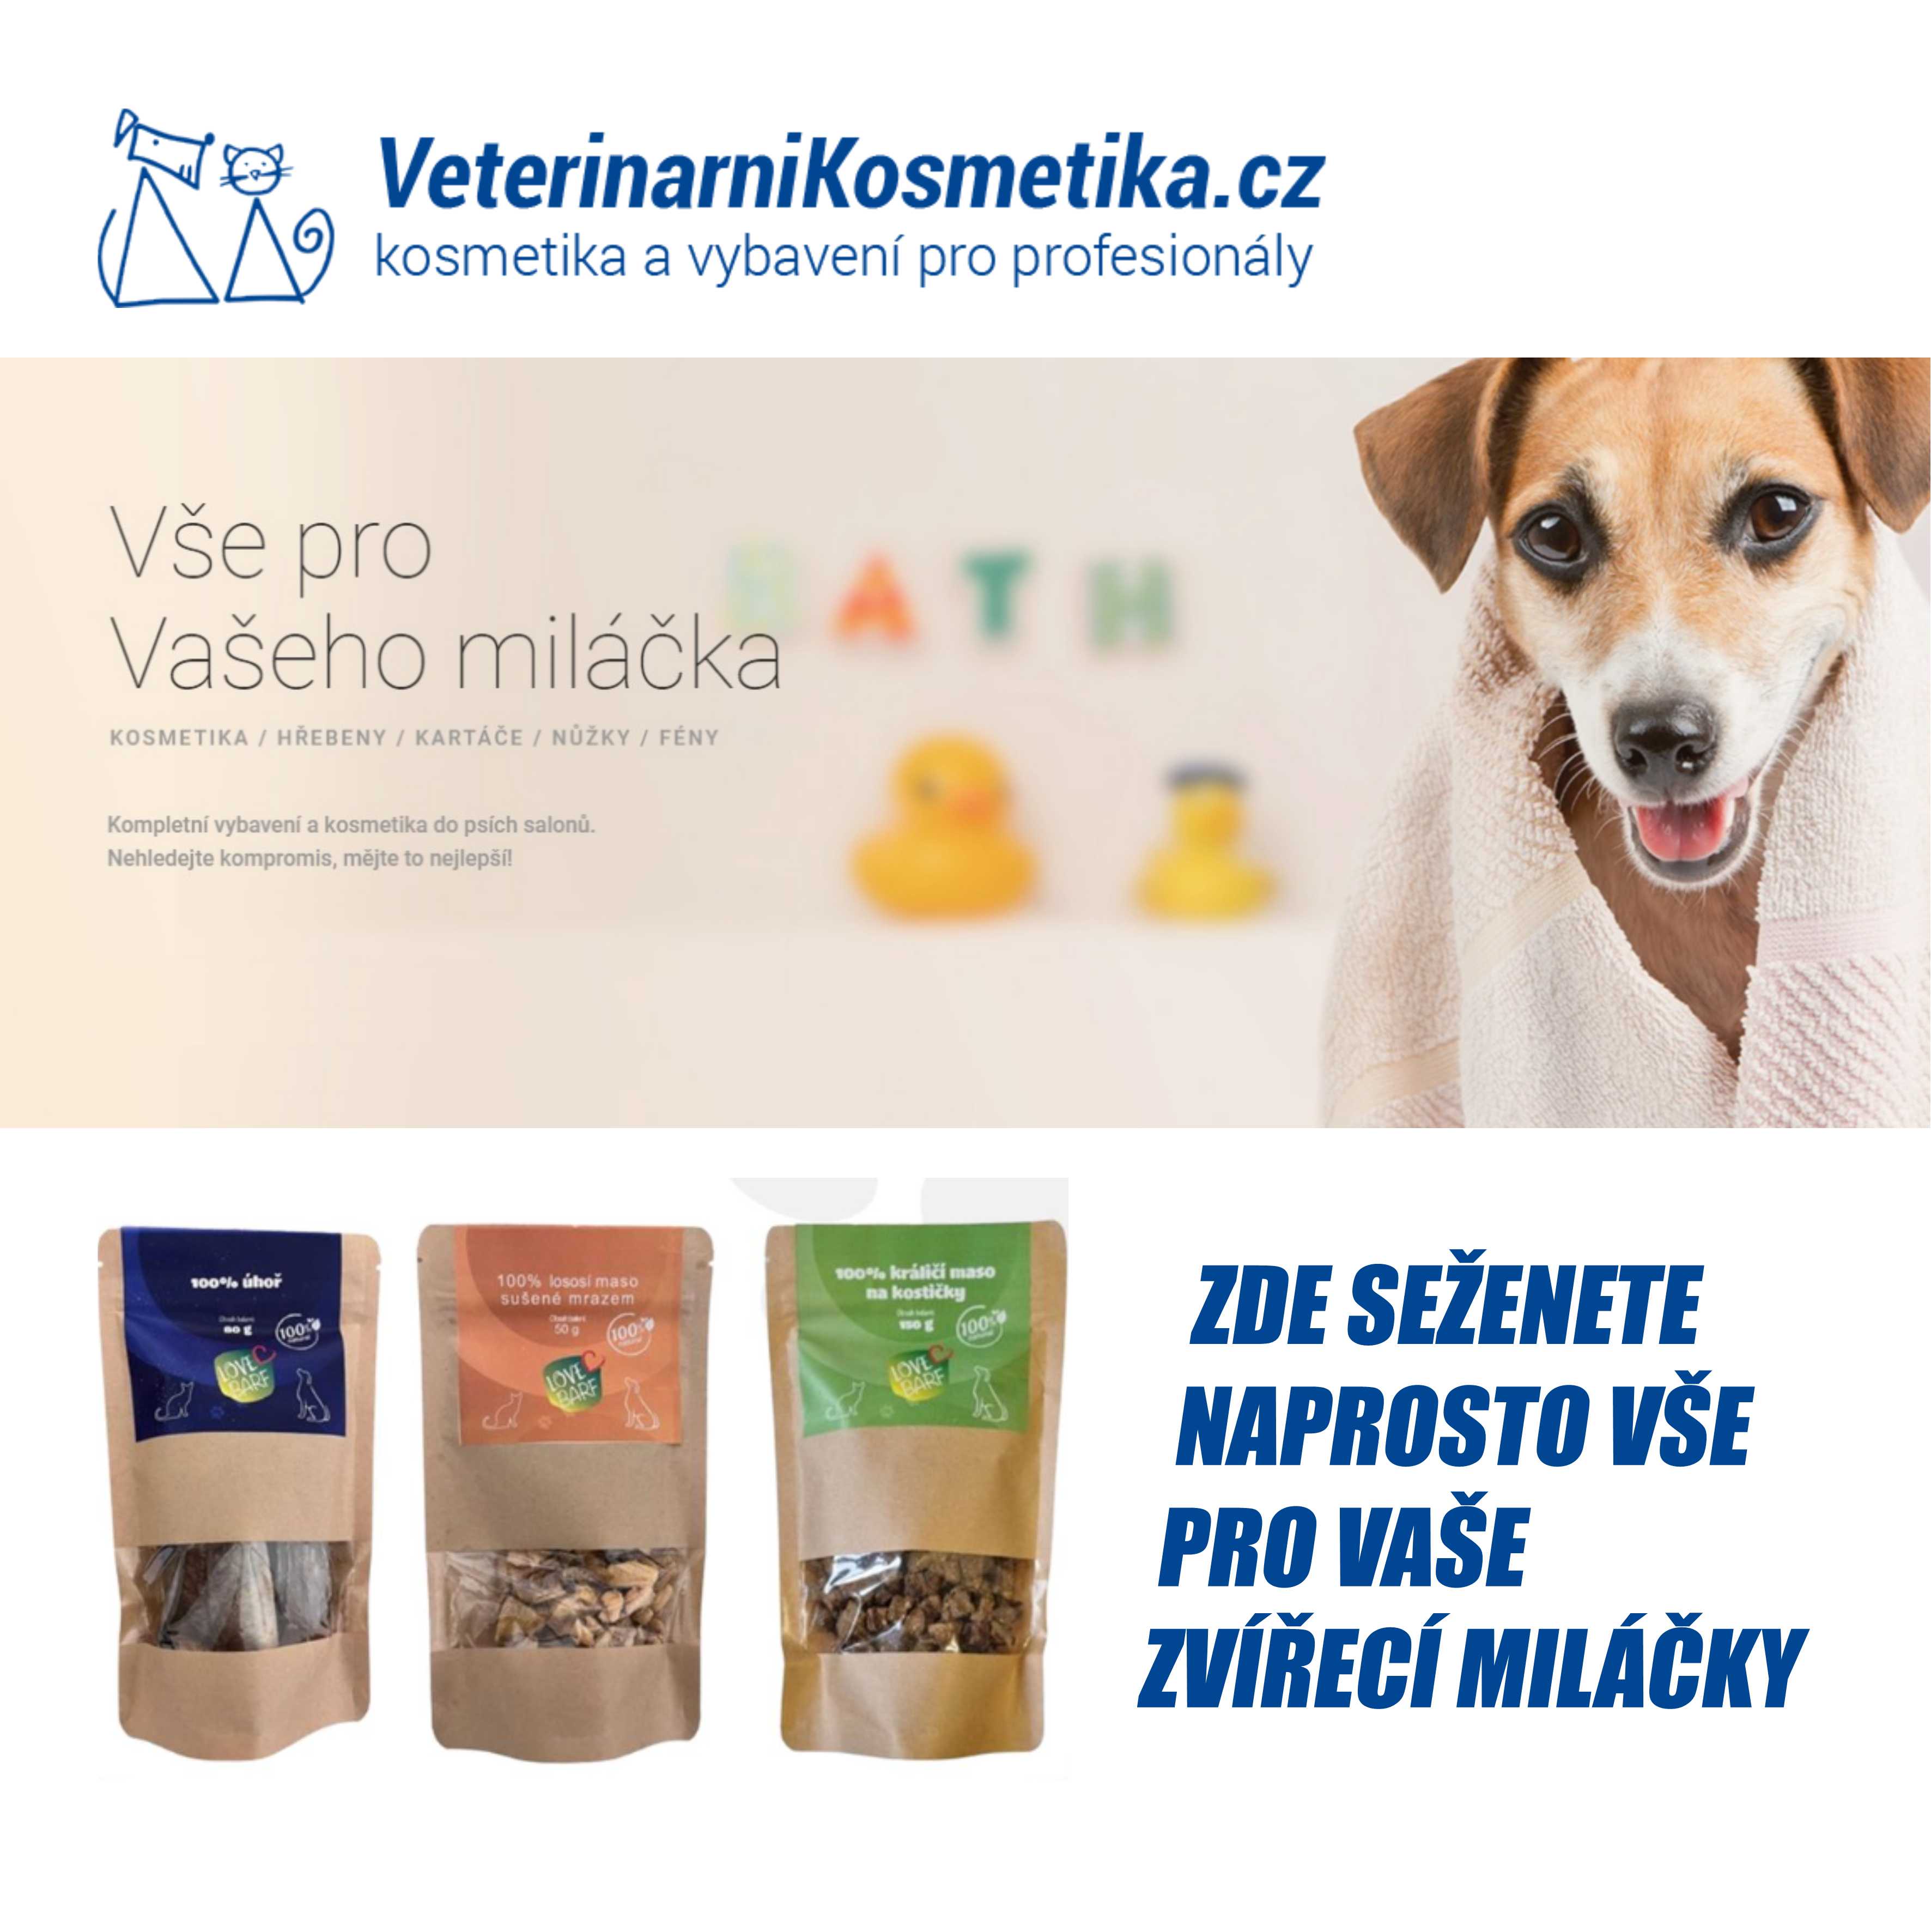 Třetím partnerem je e-shop veterinarnikosmetika.cz